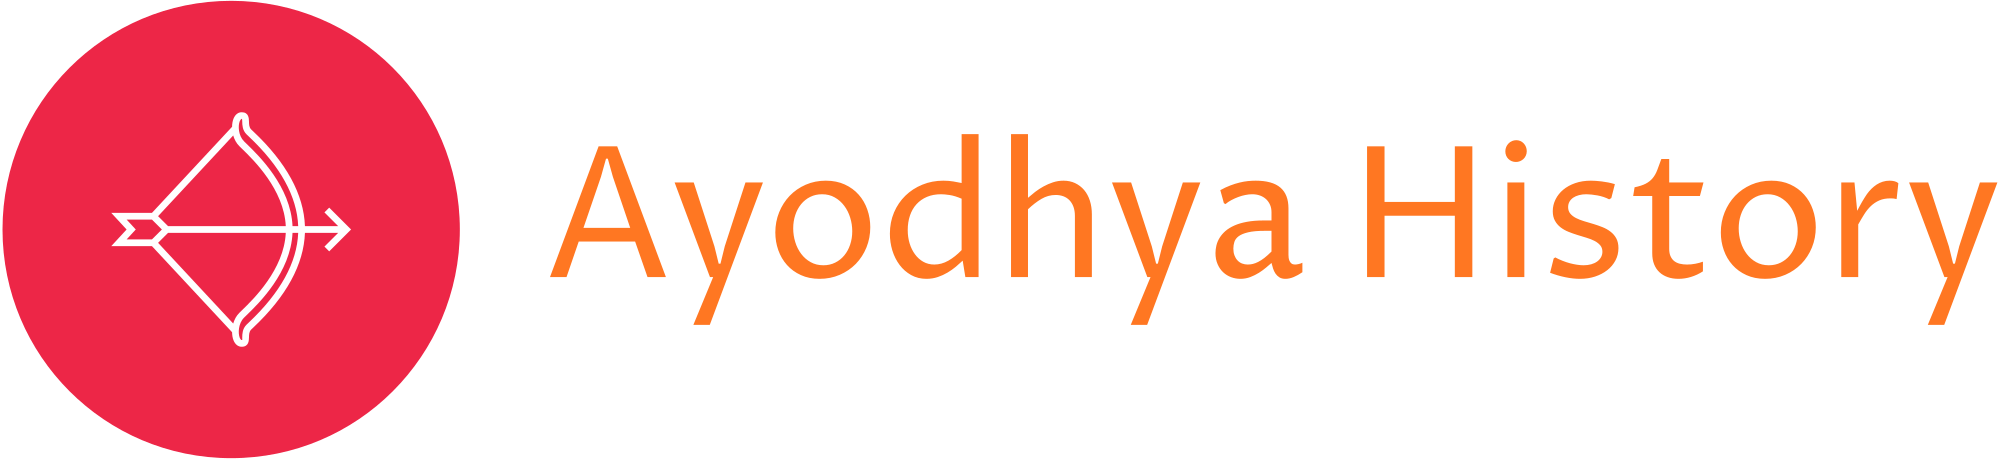 Ayodhya History